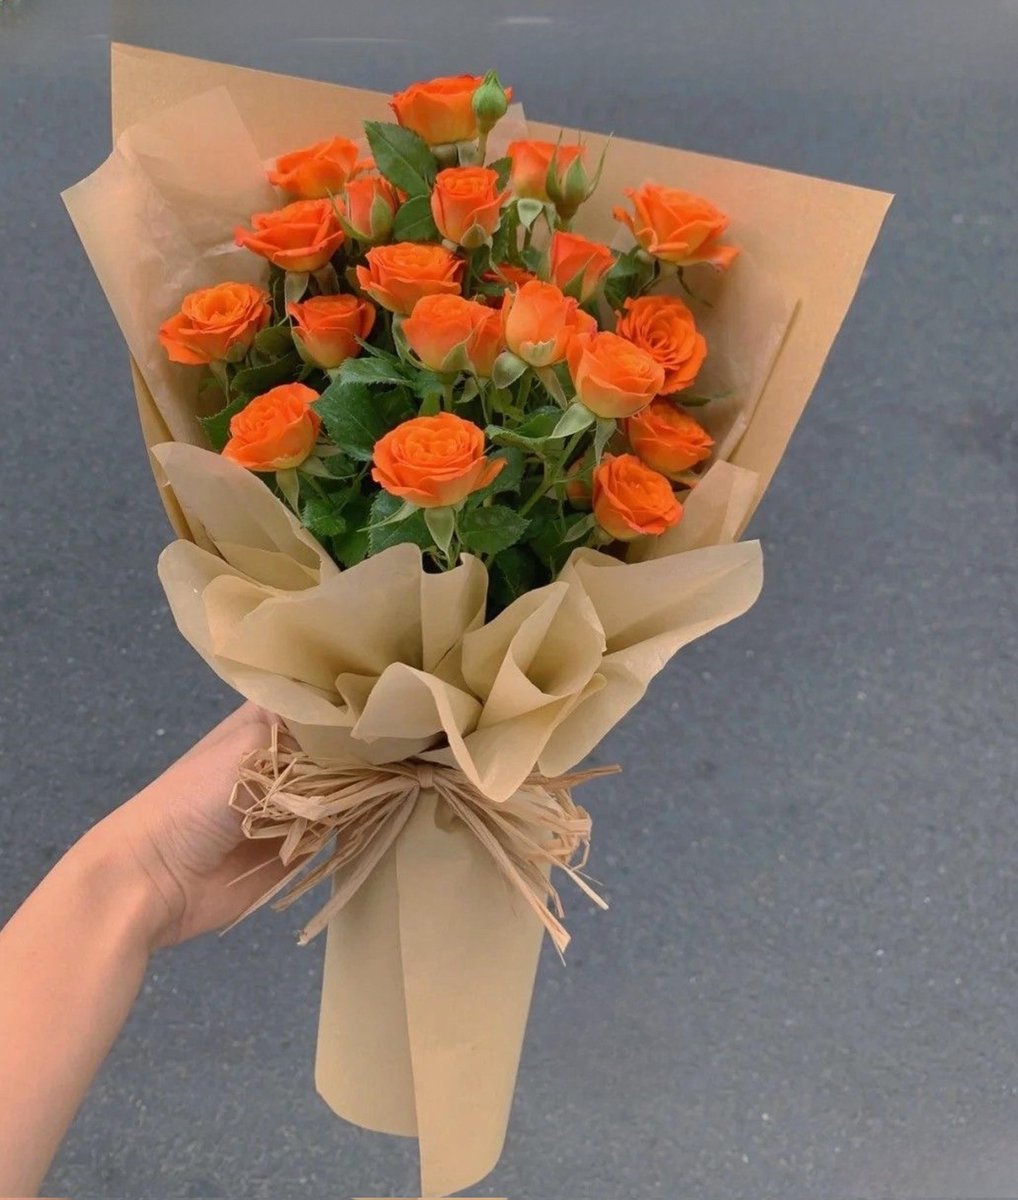 orange tulips or orange roses?